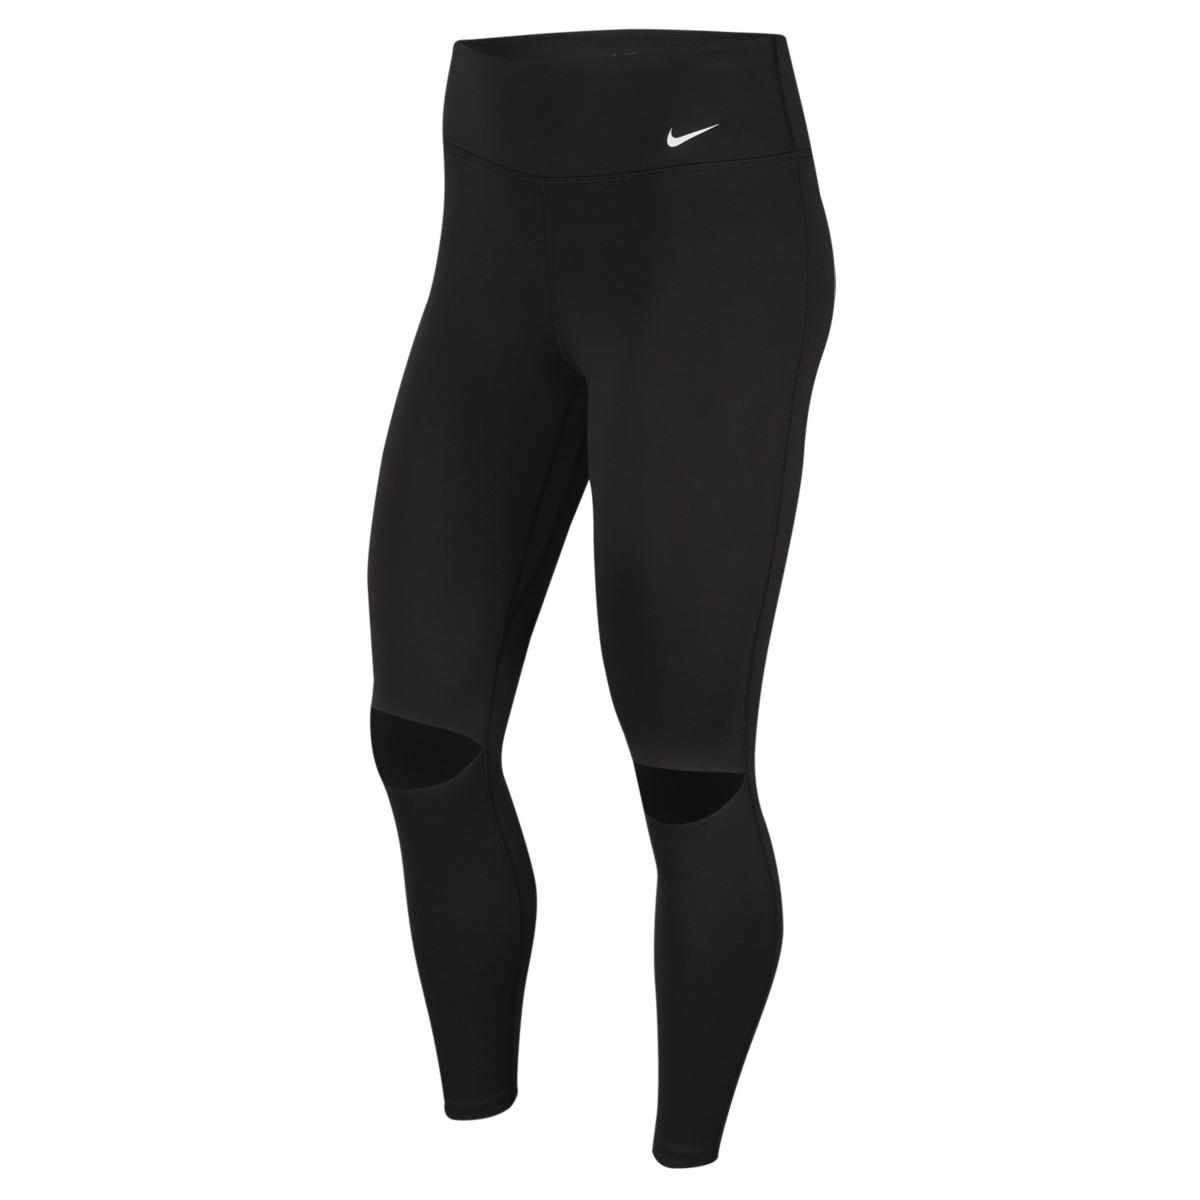 Nike Synthetic Rebel One leggings in Black - Lyst